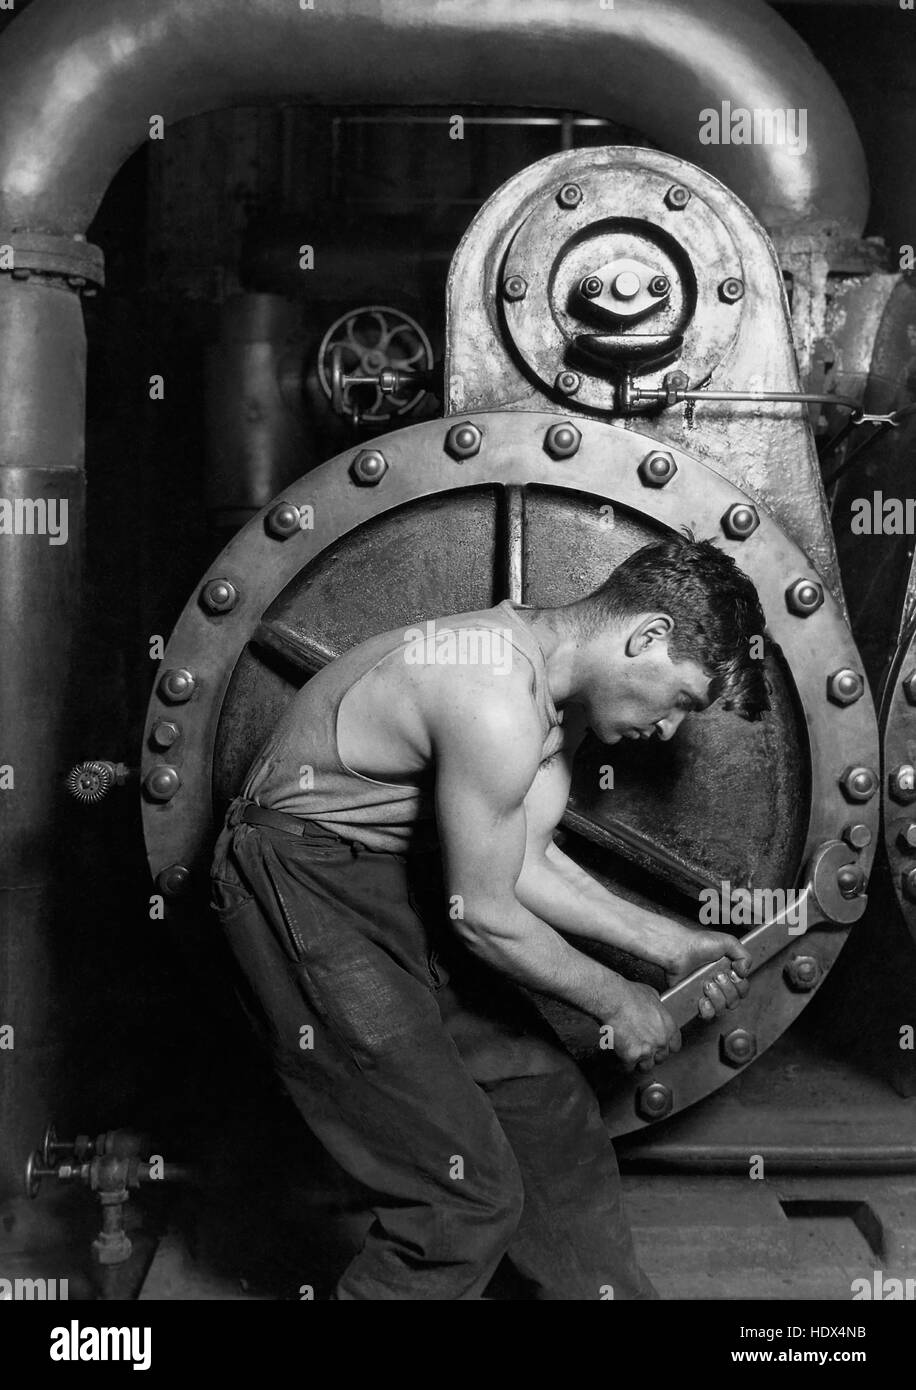 Lewis Hine 1920 macht Haus Mechaniker arbeiten an Dampfpumpe, eines seiner Arbeit Porträts zeigt eine Arbeiterklasse Amerikaner in einer industriellen Umgebung. Das sorgfältig inszenierten Subjekt, ein junger Mann mit Schraubenschlüssel in der hand, ist gebückt, umgeben von den Maschinen, die seine Arbeit definiert. Aber während eingeschränkt durch die Maschinerie (fast ein Metall Gebärmutter), der Mann ist eine Belastungsprobe für dagegen--Muskeln straff, mit einem entschlossenen Blick--in eine ikonische Darstellung der Männlichkeit. Foto von Lewis W. Hine. Stockfoto